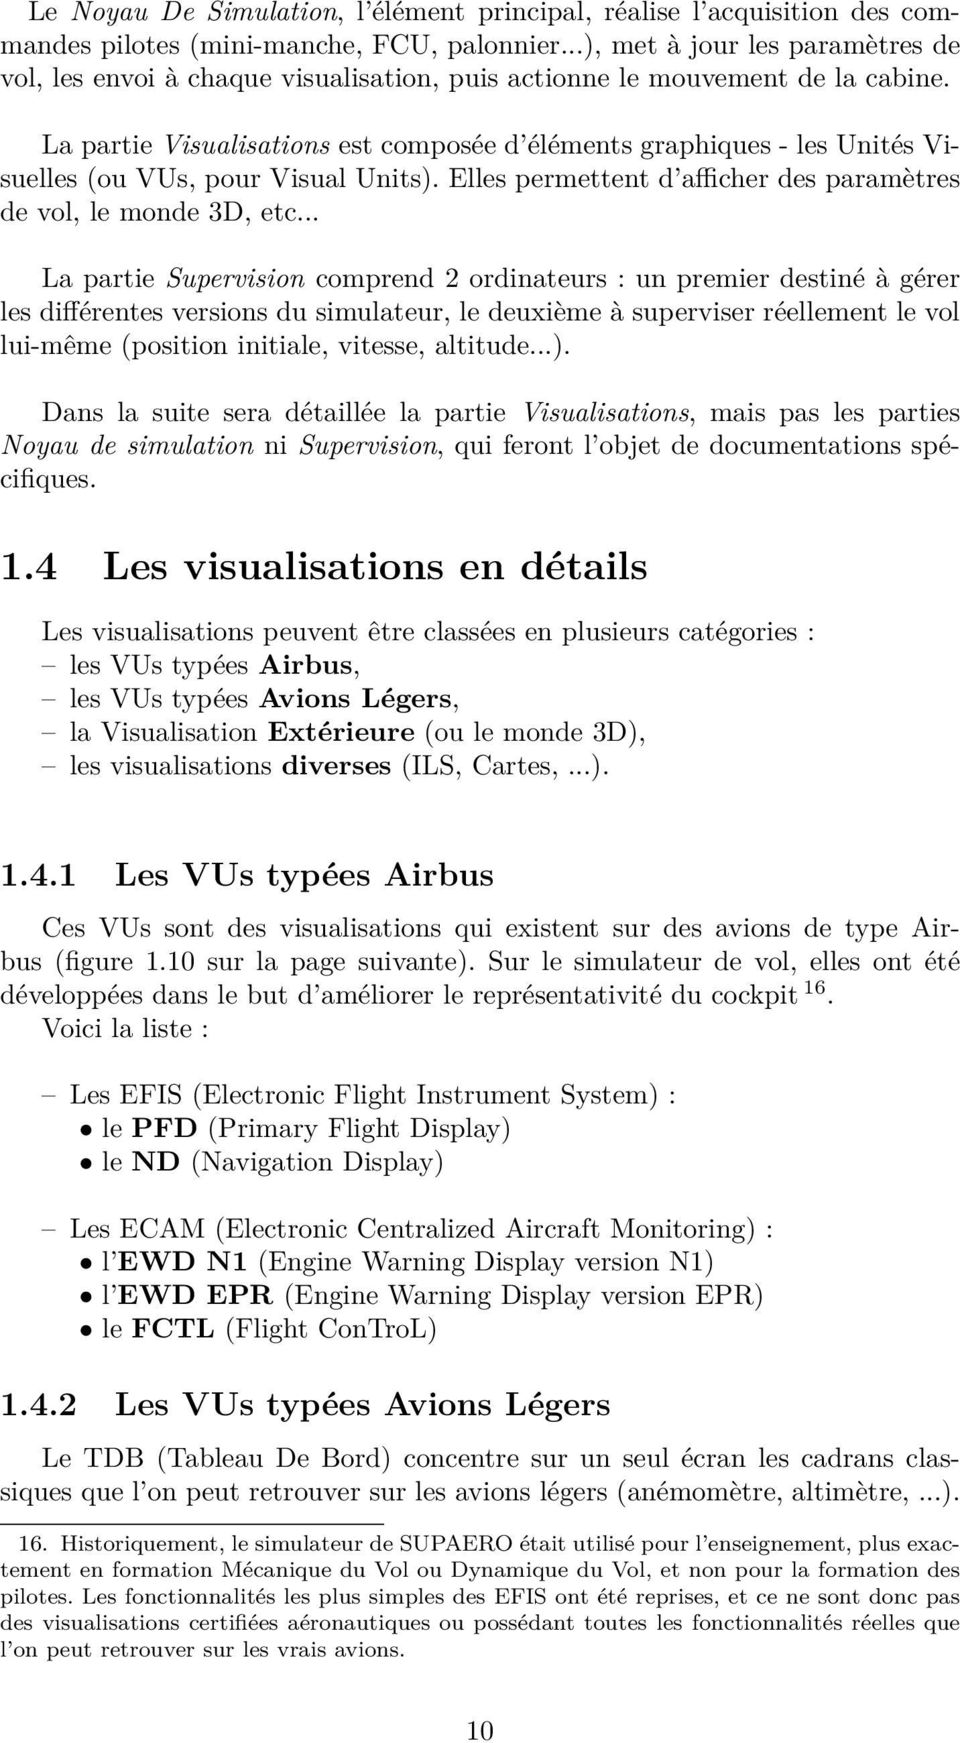 La partie Visualisations est composée d éléments graphiques - les Unités Visuelles (ou VUs, pour Visual Units). Elles permettent d afficher des paramètres de vol, le monde 3D, etc.